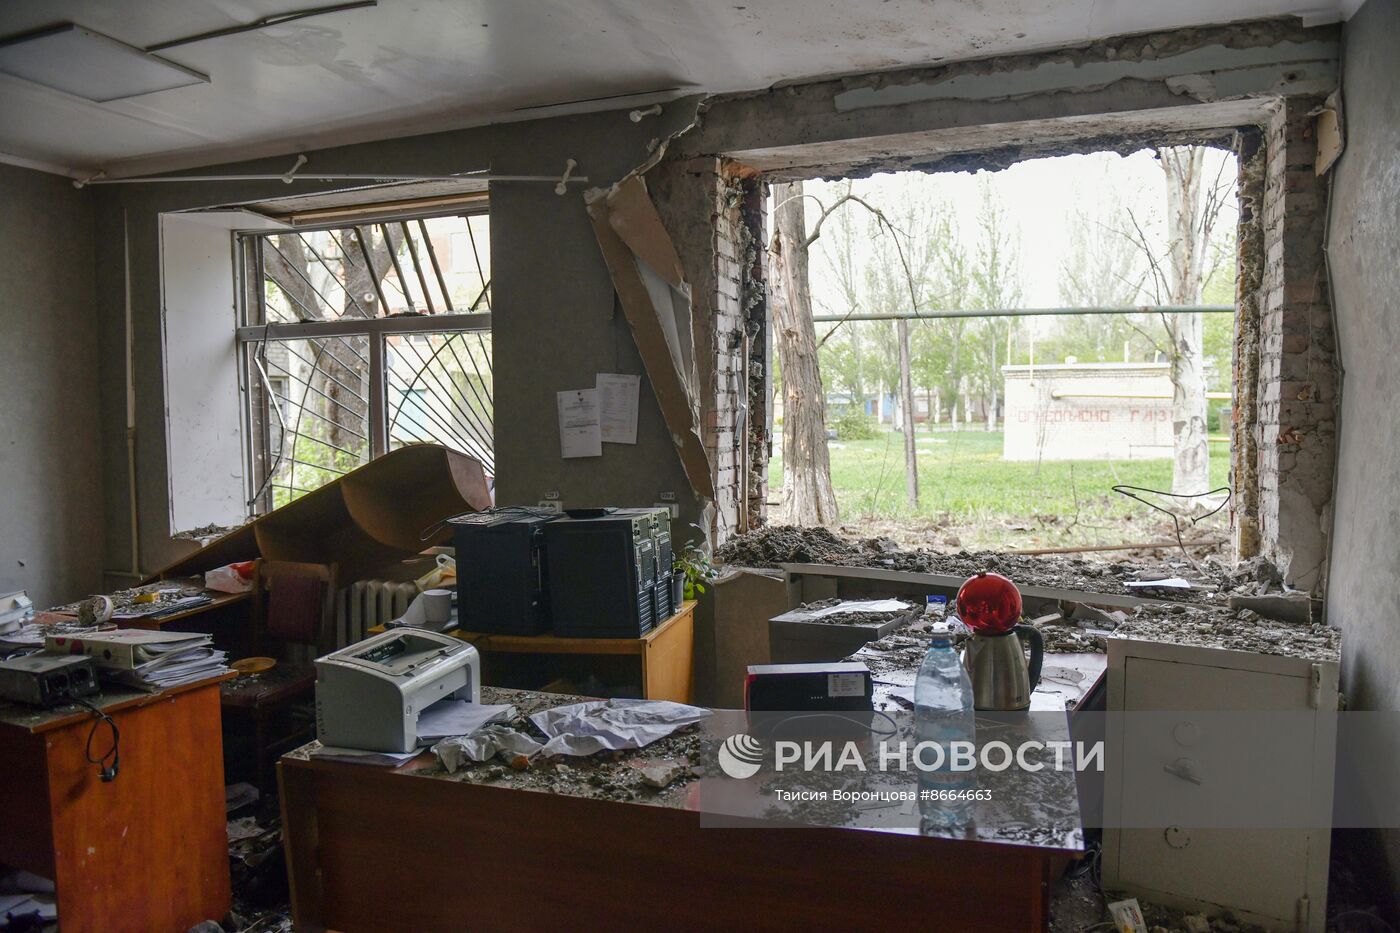 ВСУ обстреляли центр Горловки в ДНР